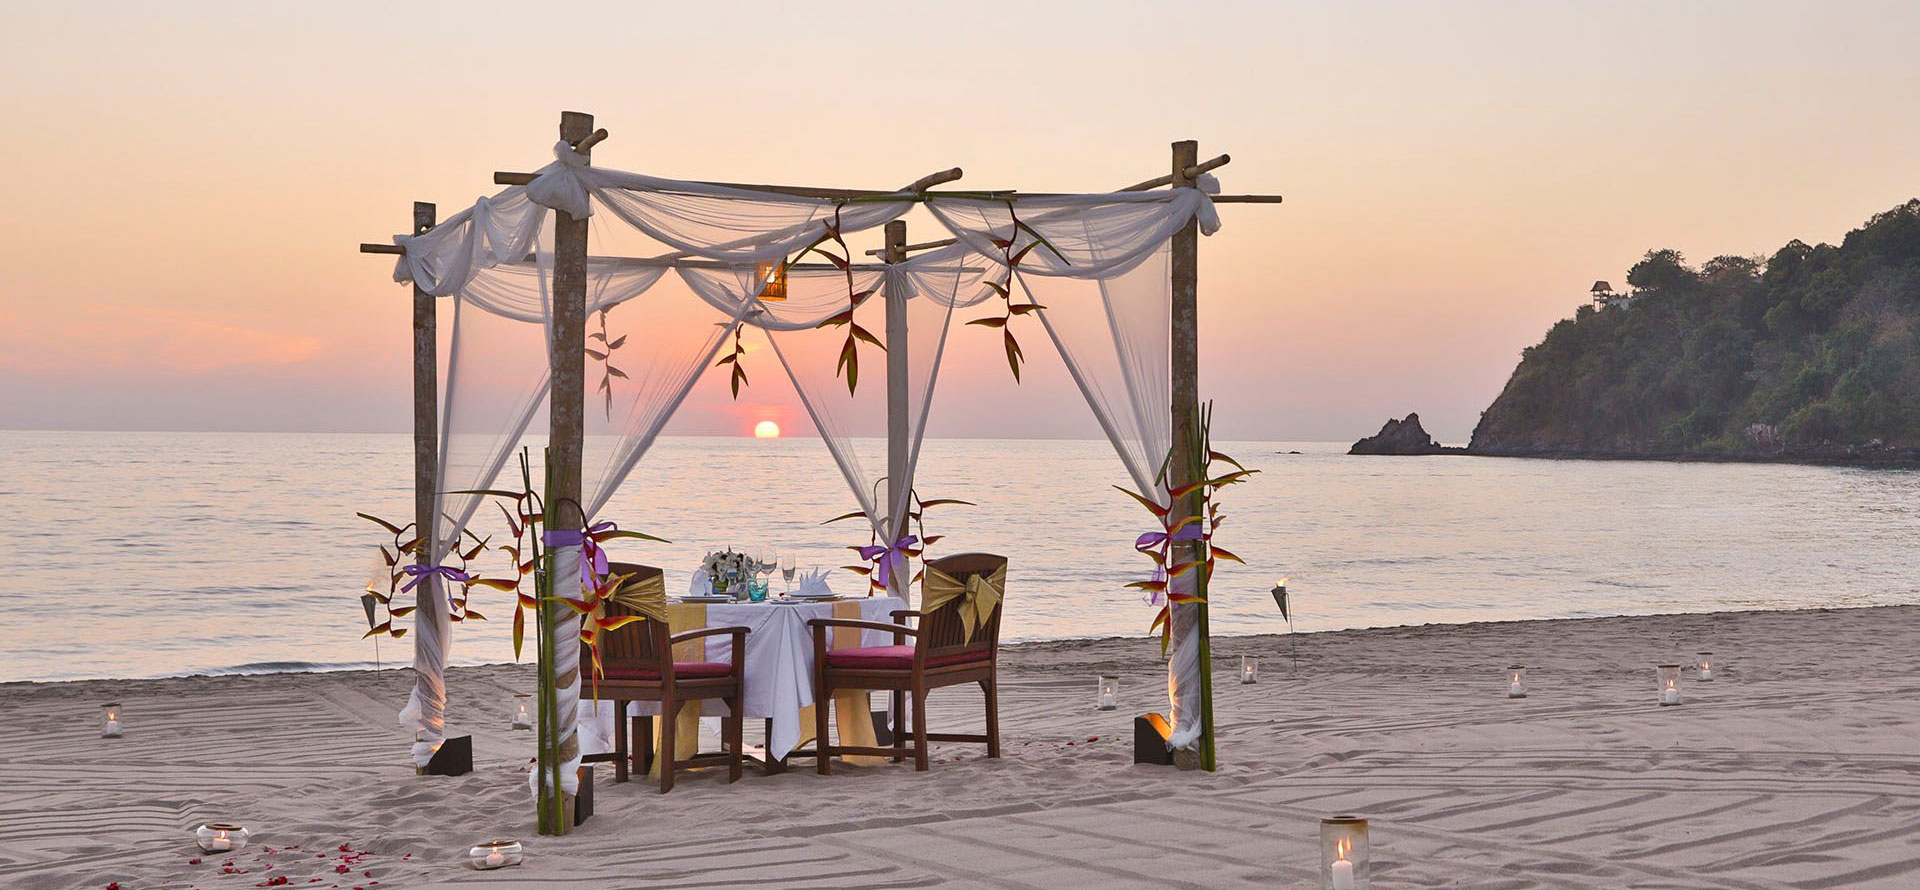 Thailand honeymoon resort at sunset.